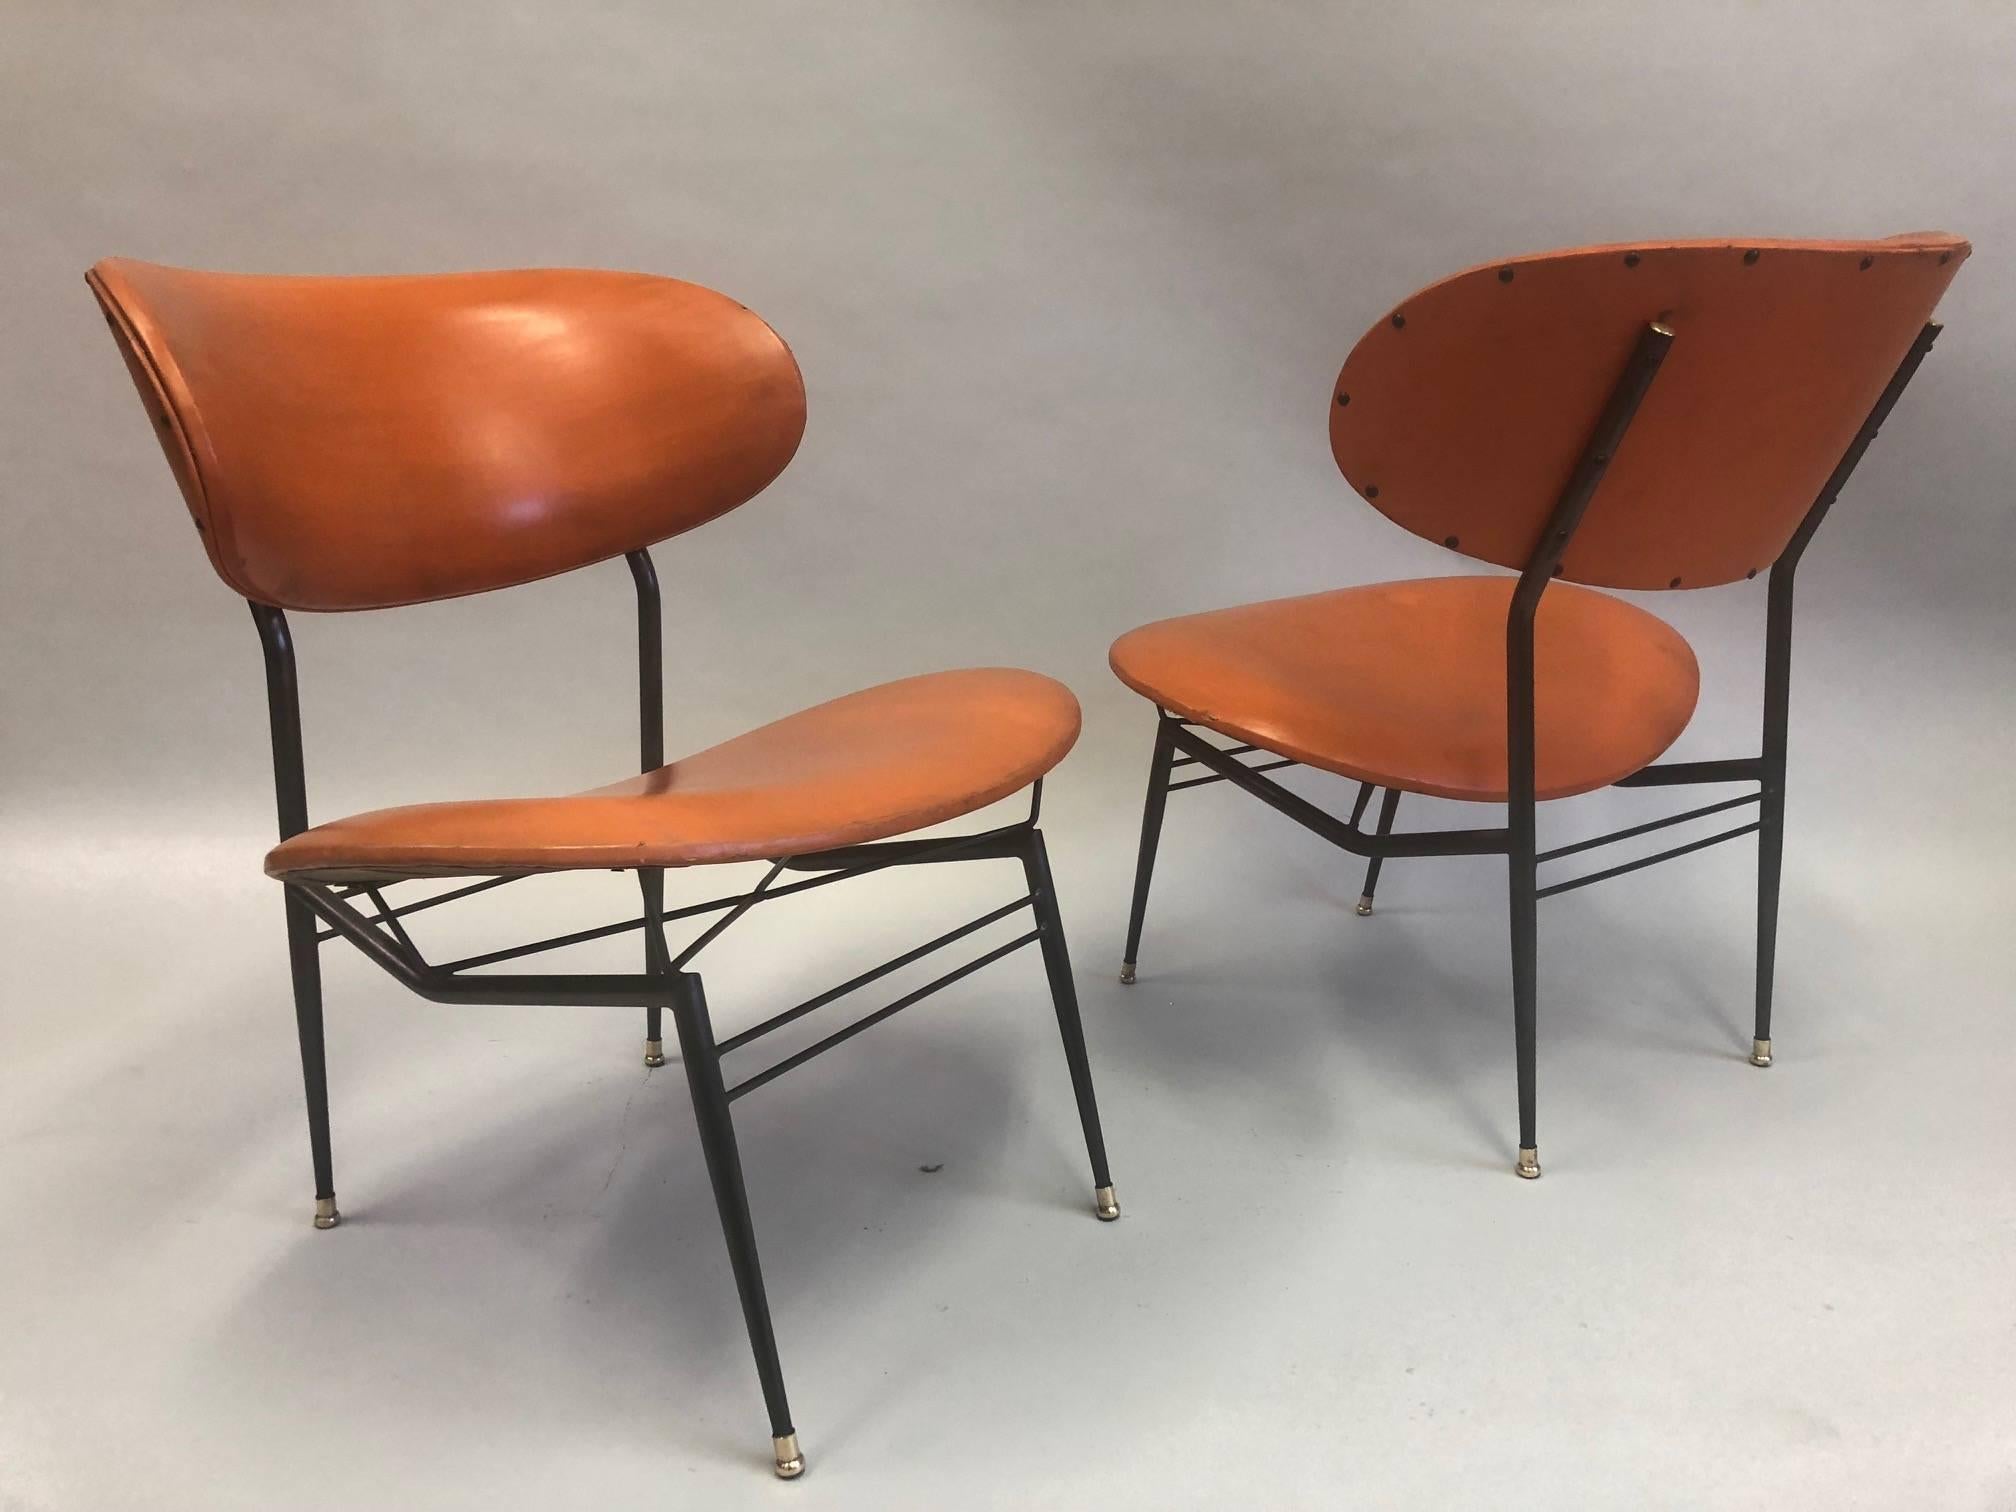 Deux paires d'importantes chaises de salon / fauteuils / chaises à pantoufles italiennes du milieu du siècle par Gastone Rinaldi. Ces pièces étonnantes ont une présence architecturale rare et sont composées d'un cadre en acier émaillé fini avec des